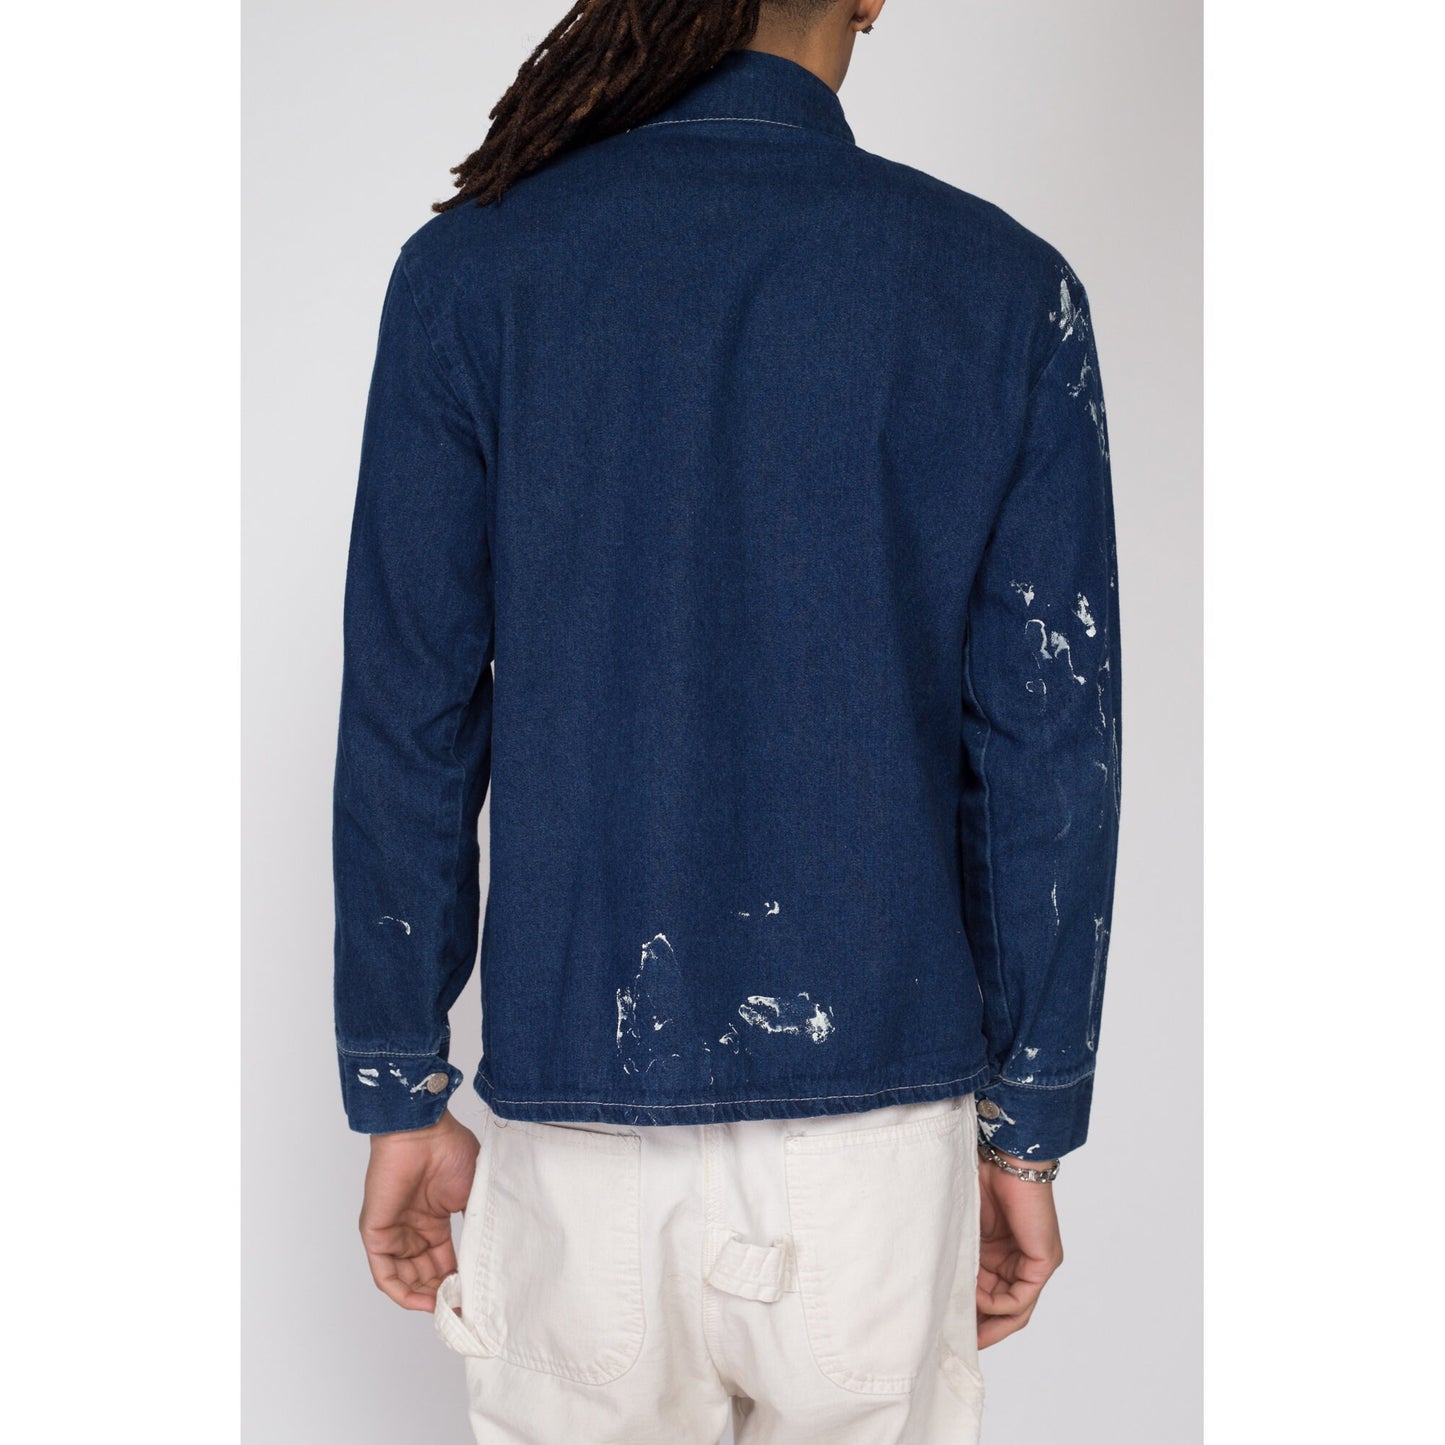 Sm-Med 80s Pointer Brand Denim Chore Coat | Vintage Paint Splatter Distressed Workwear Jean Jacket